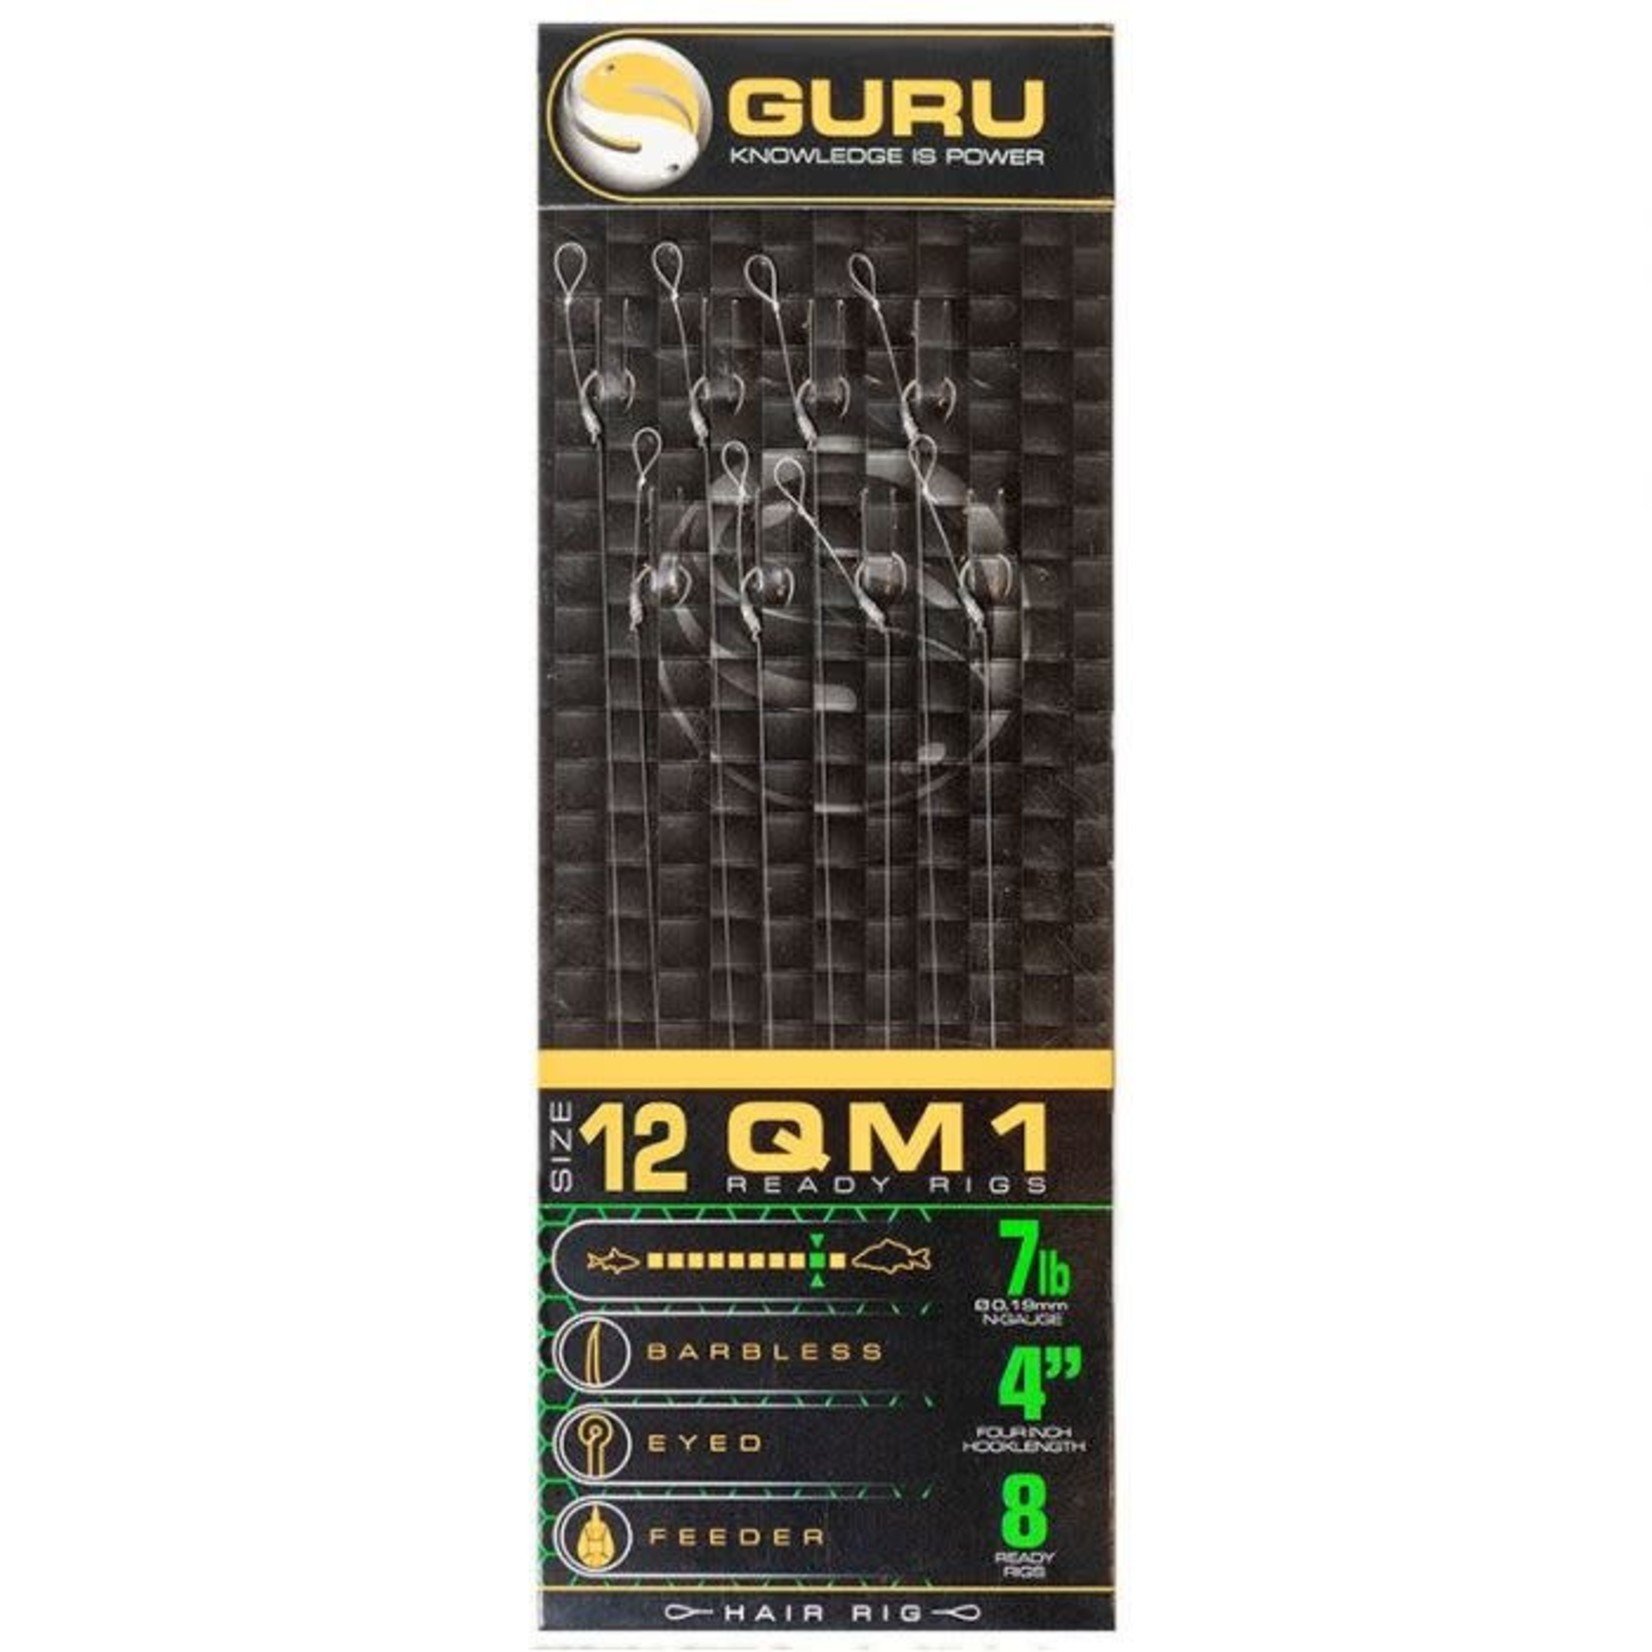 GURU Guru QM1 Standard Hair 4" 0.19mm Size 12